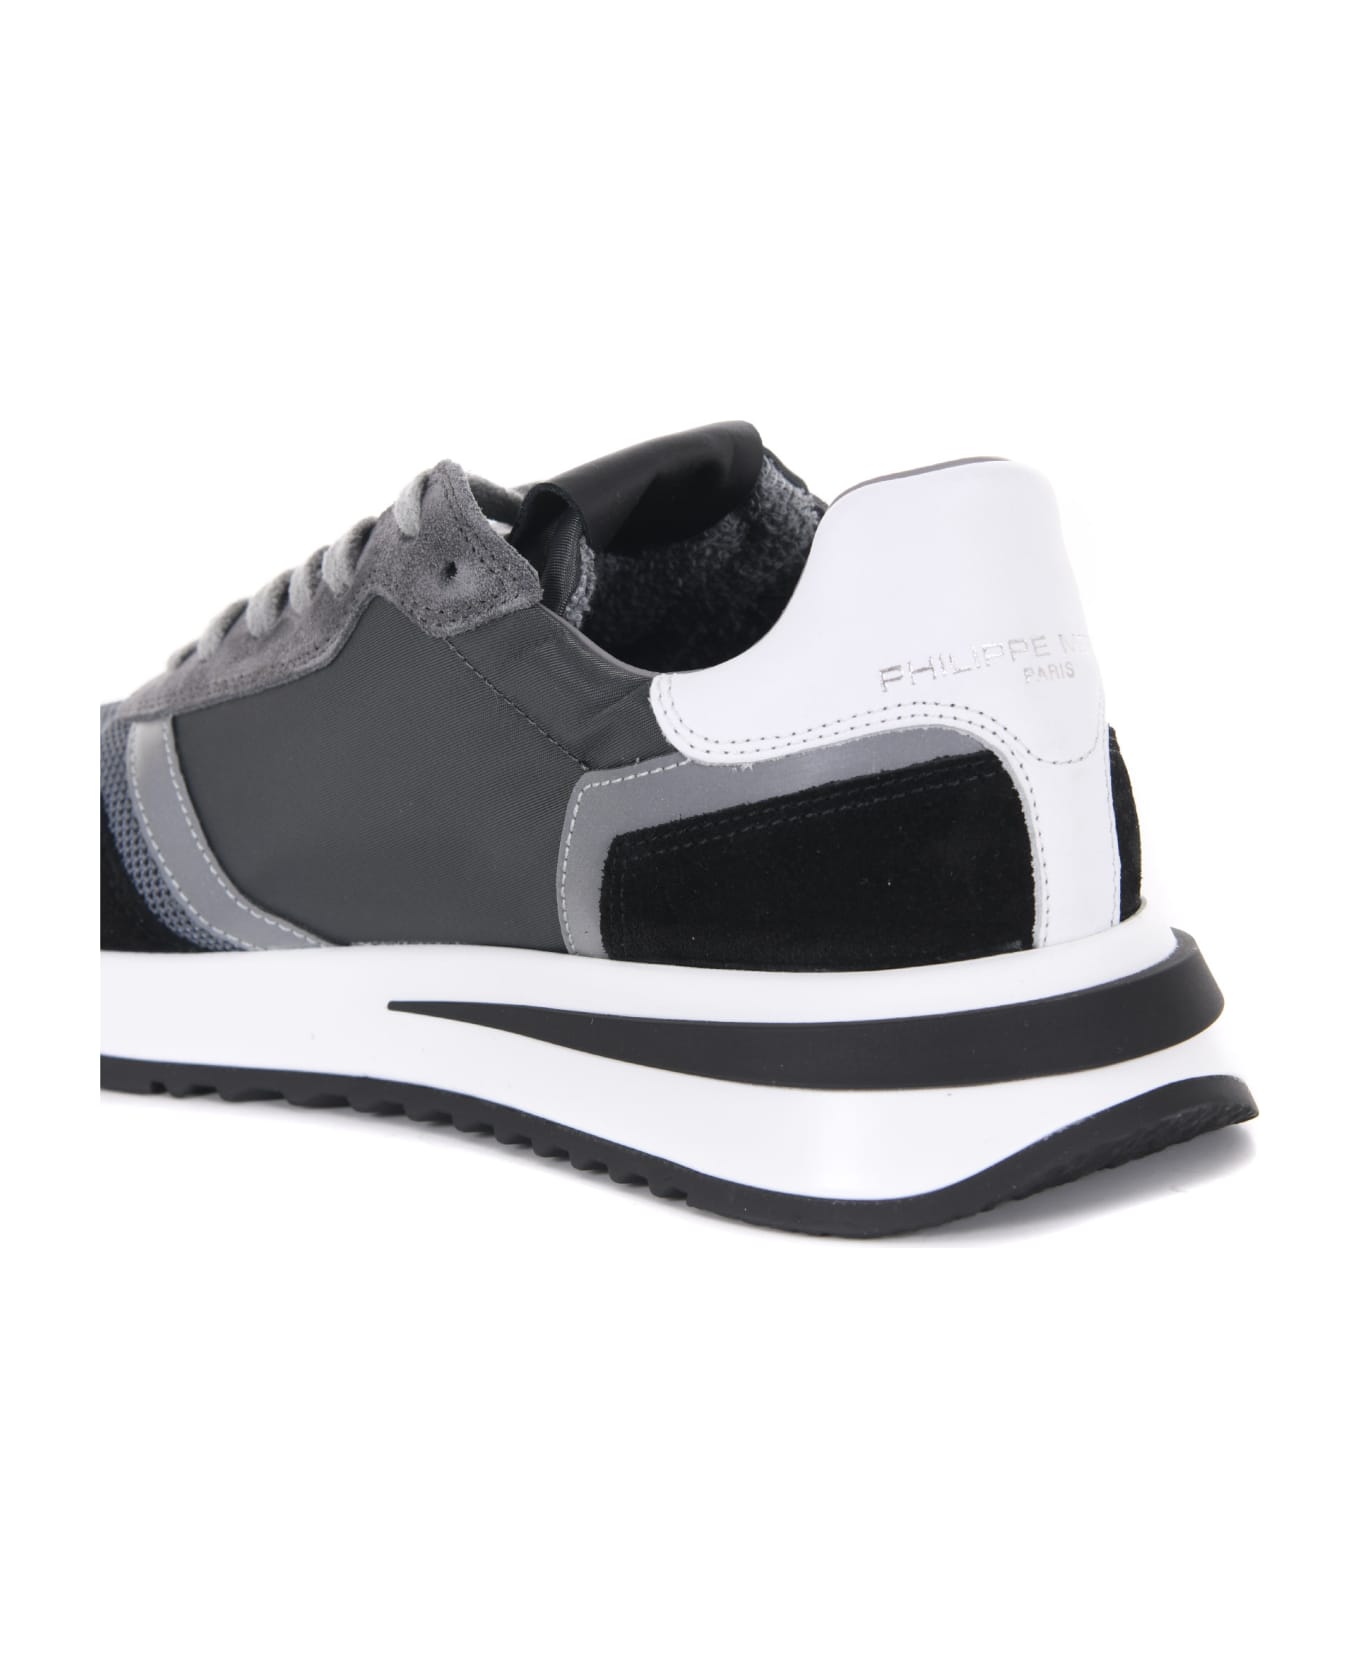 Philippe Model Sneakers Philippe Model "tropez 2.1 Low" In Camoscio E Nylon - Grigio/nero